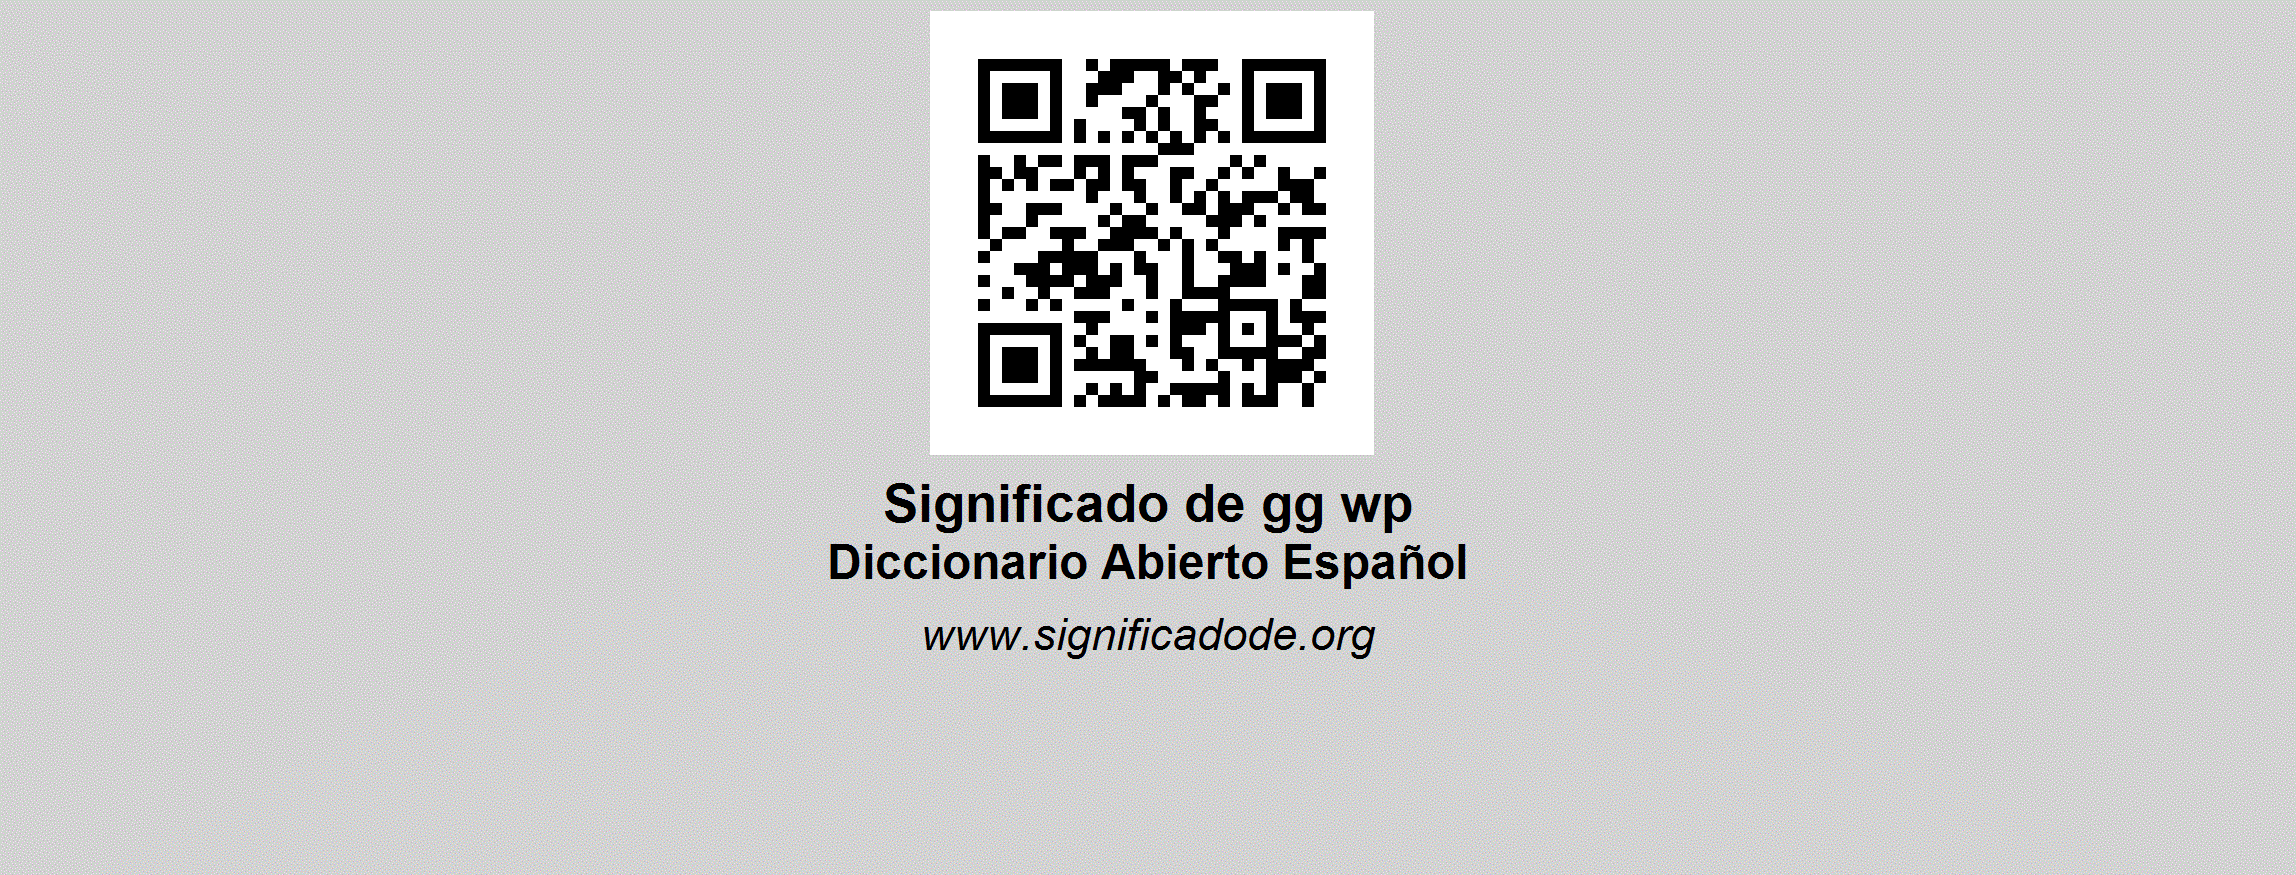 GG WP - Diccionario Abierto de Español